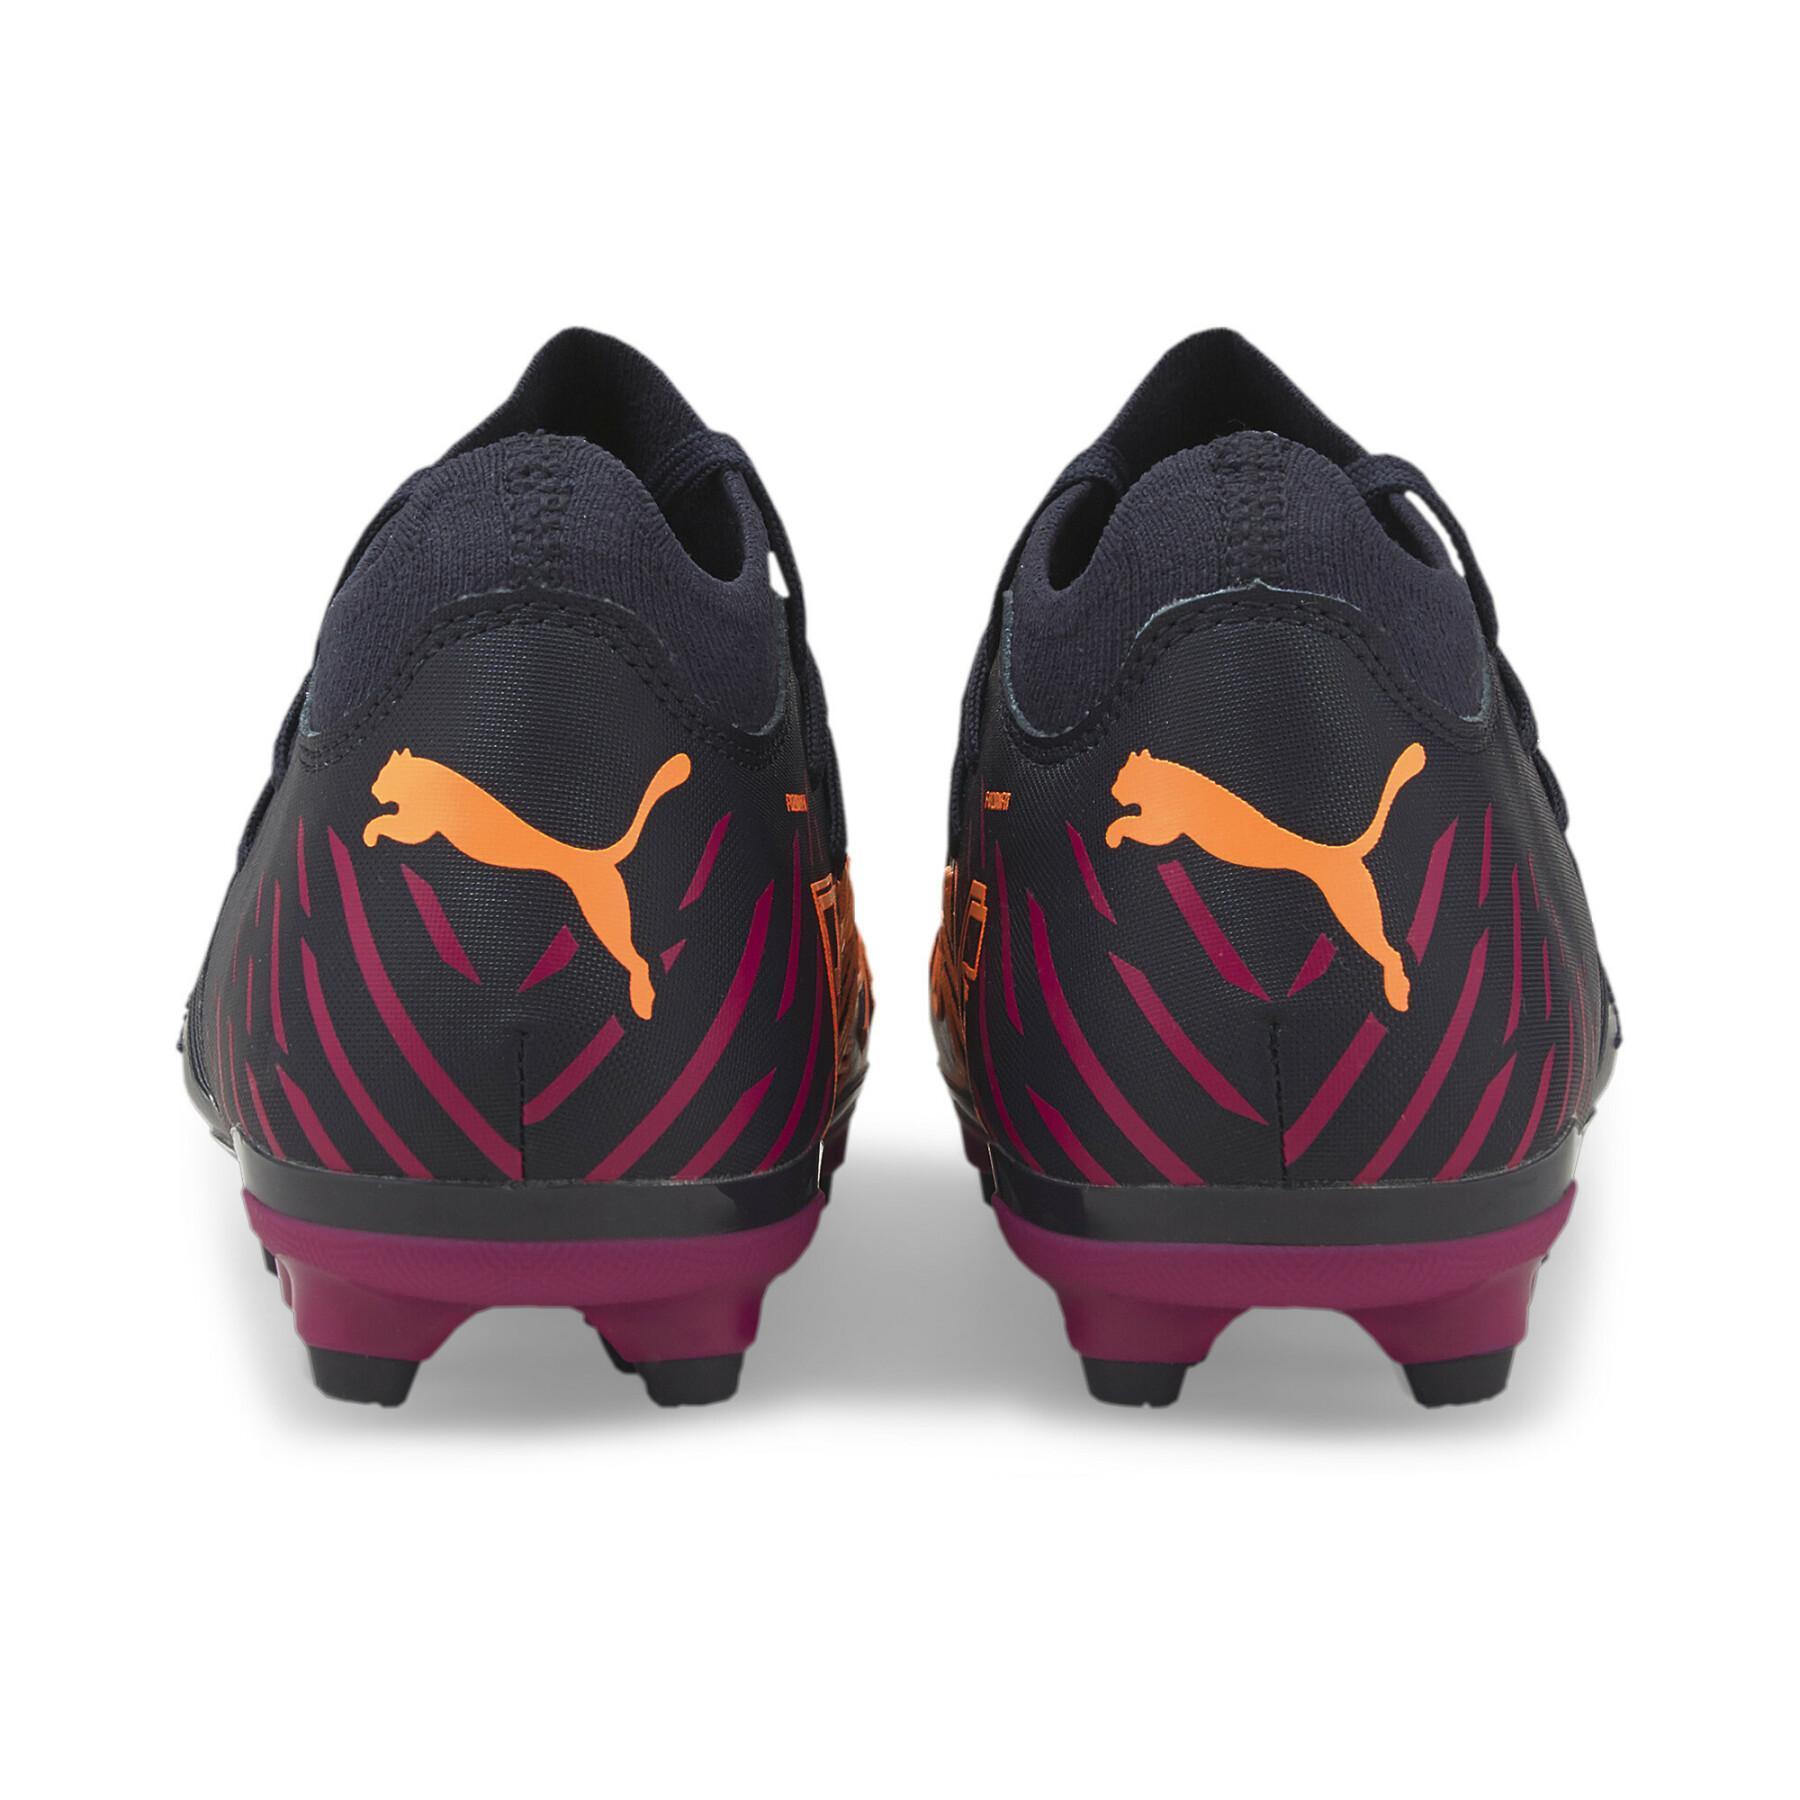 Sapatos de futebol para crianças Puma FUTURE Z 3.2 FG/AG